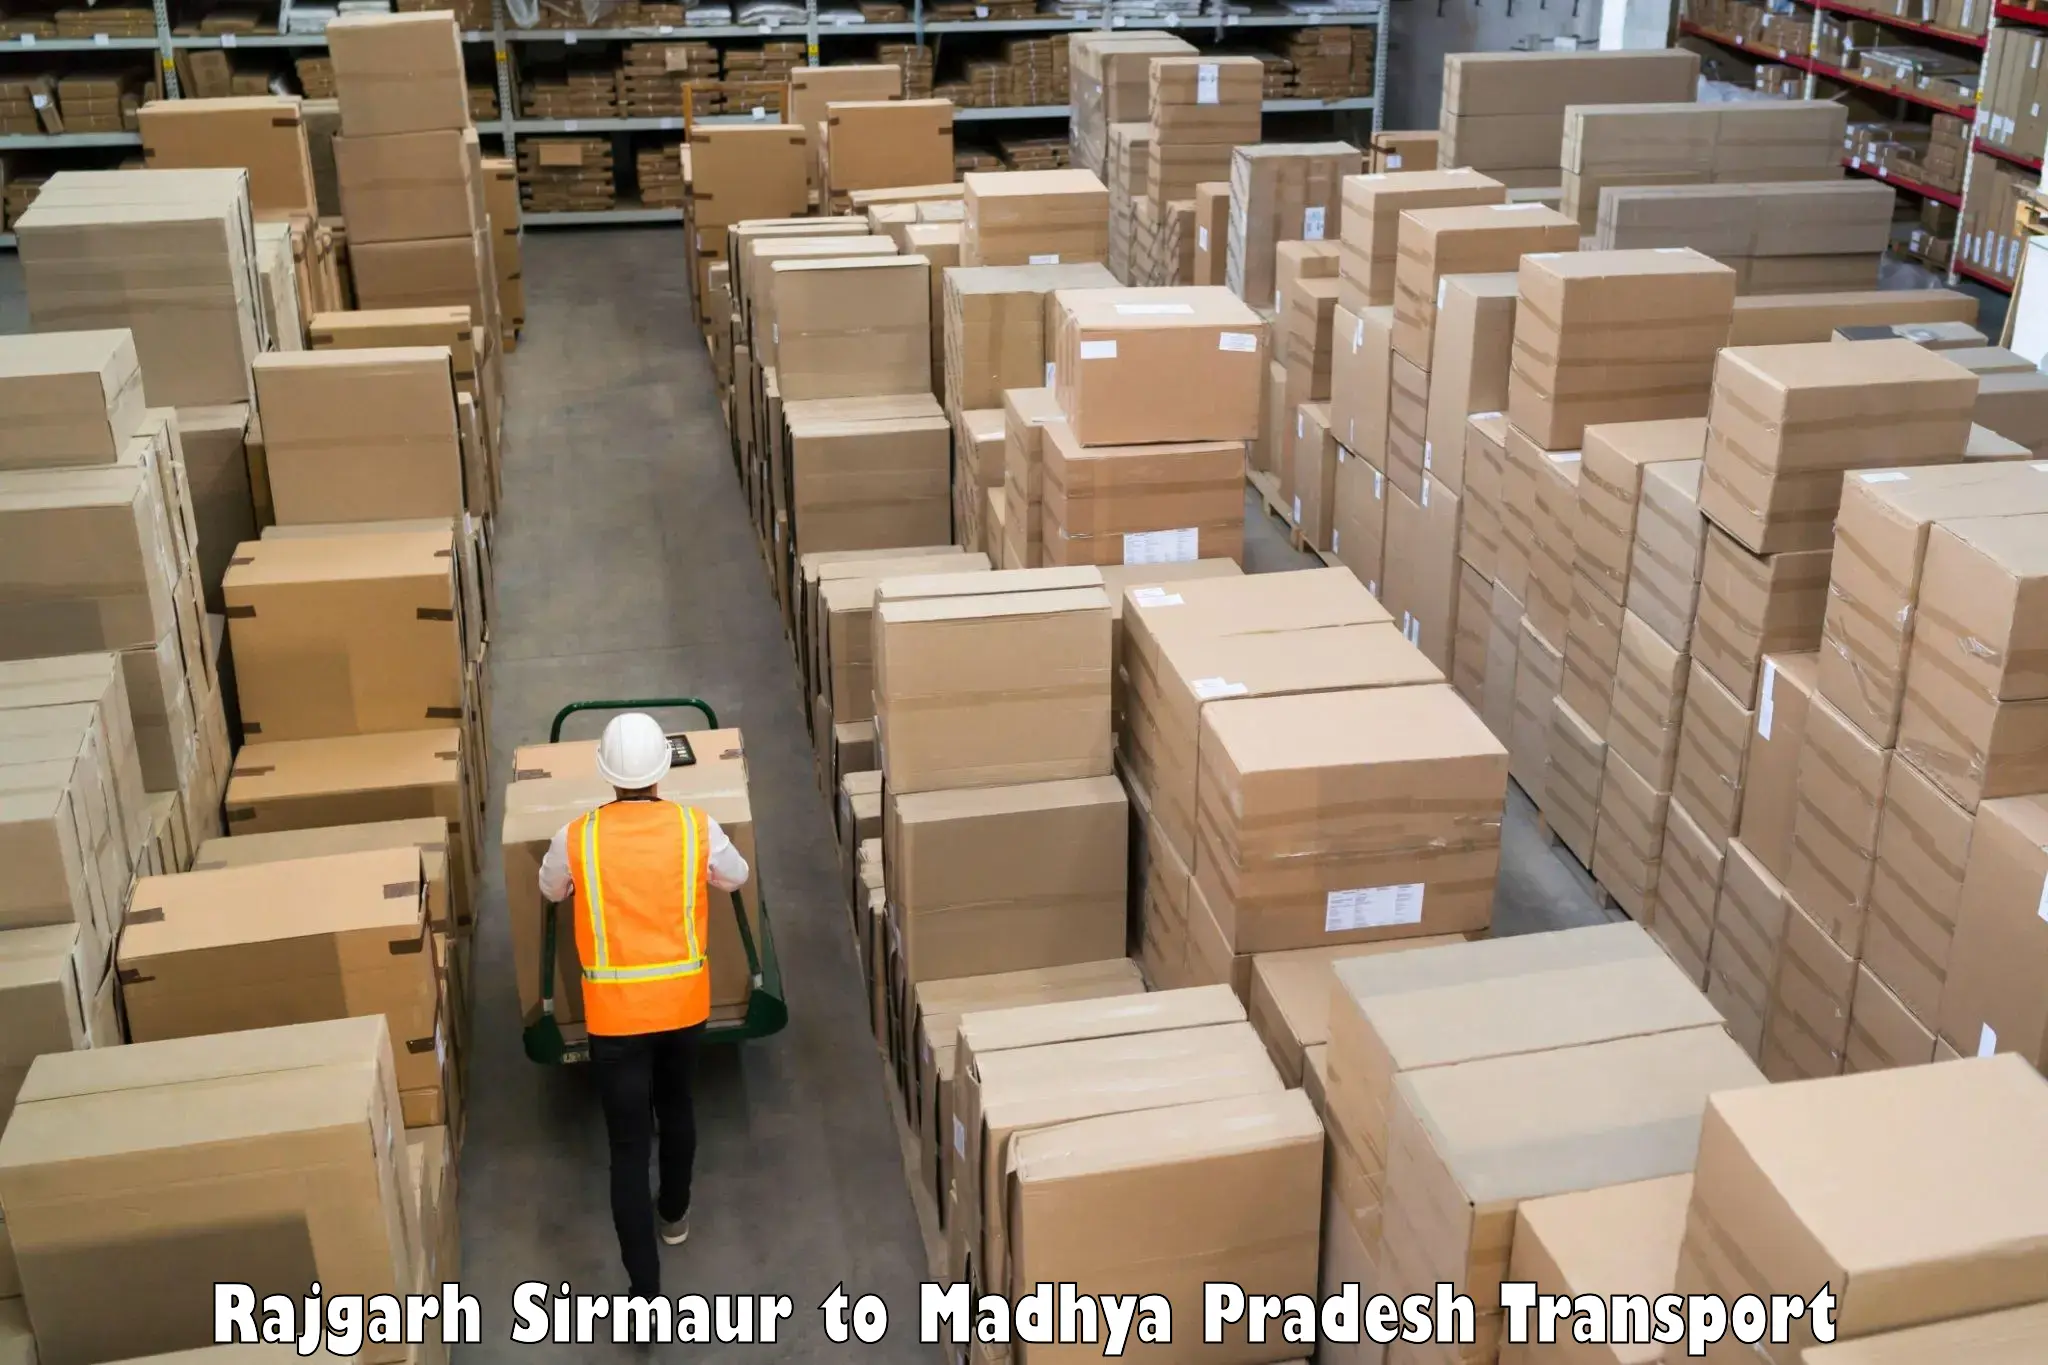 Part load transport service in India Rajgarh Sirmaur to Jaitwara